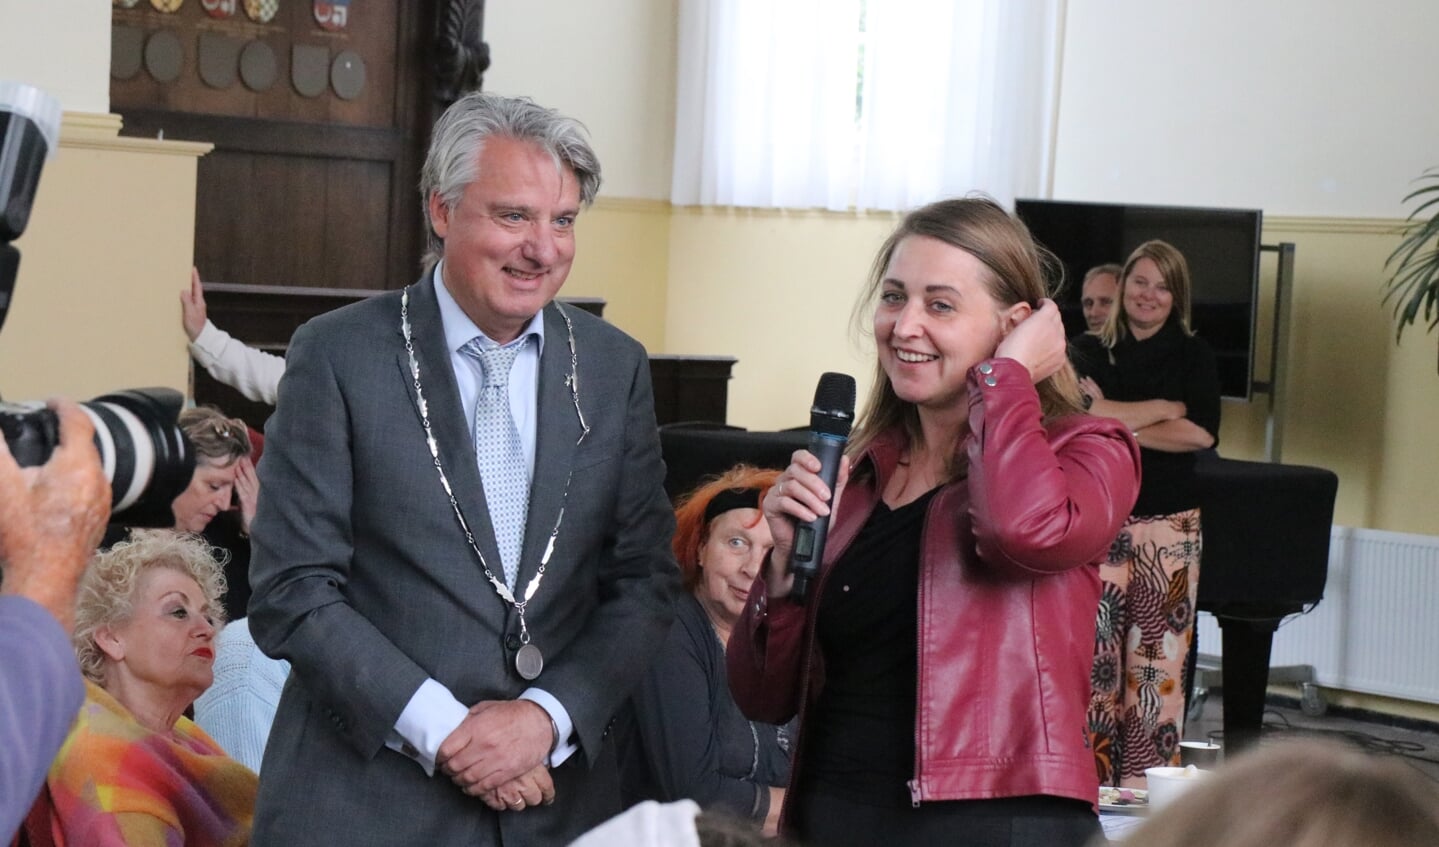 Burgemeester Moolenburgh met Alicia, die de cheque van 1000 euro in ontvangst mocht nemen voor Oekraïne.